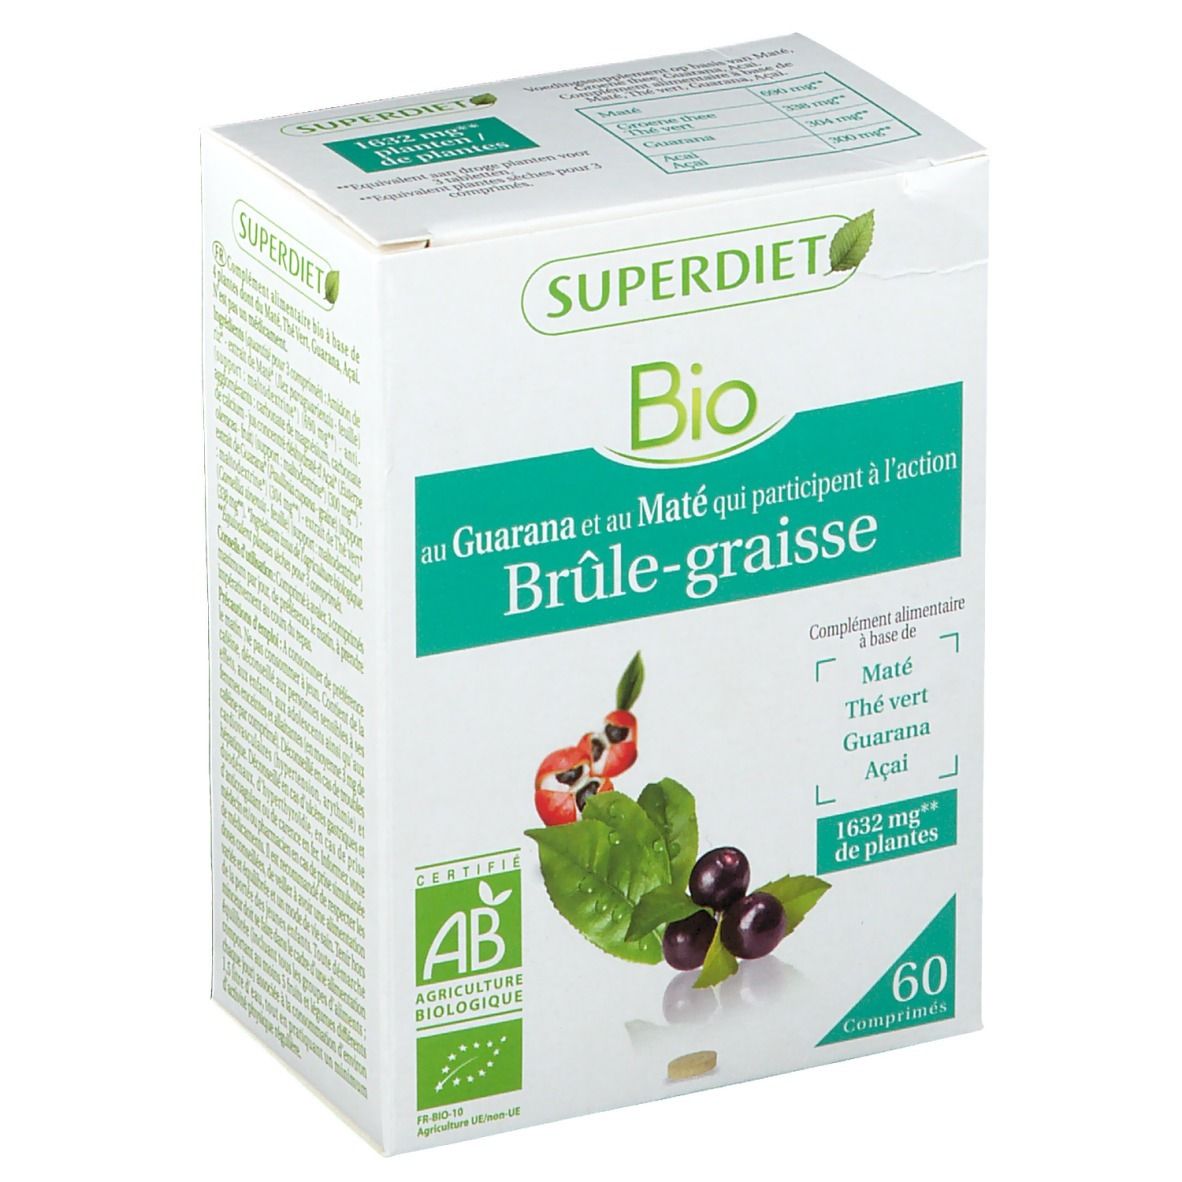 Super Diet Complex Guarana Bruleur De Graisse Bio